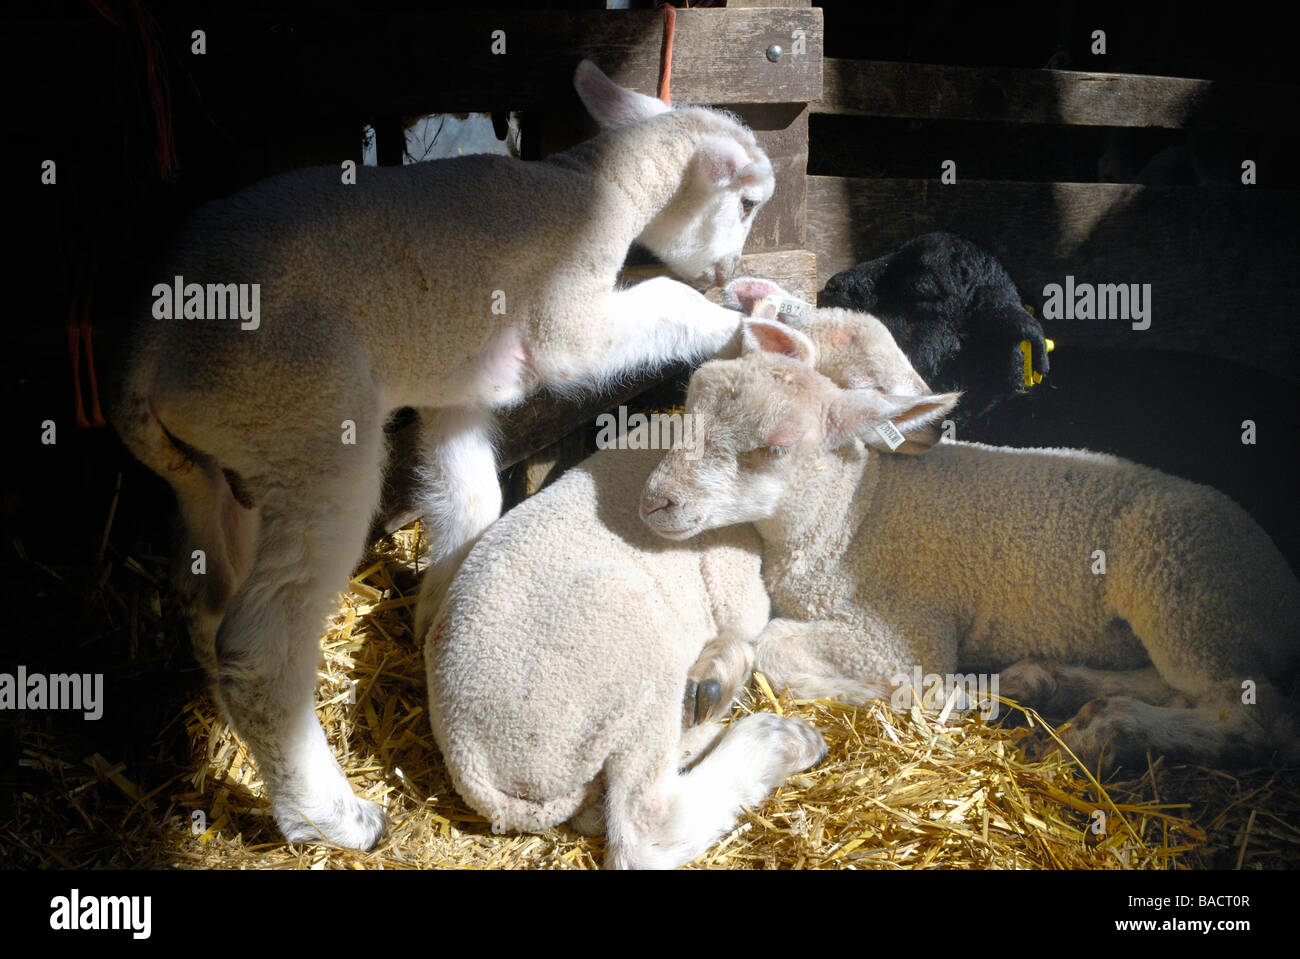 Quatre agneaux nouveau-né blotti ensemble dans un stylo Banque D'Images